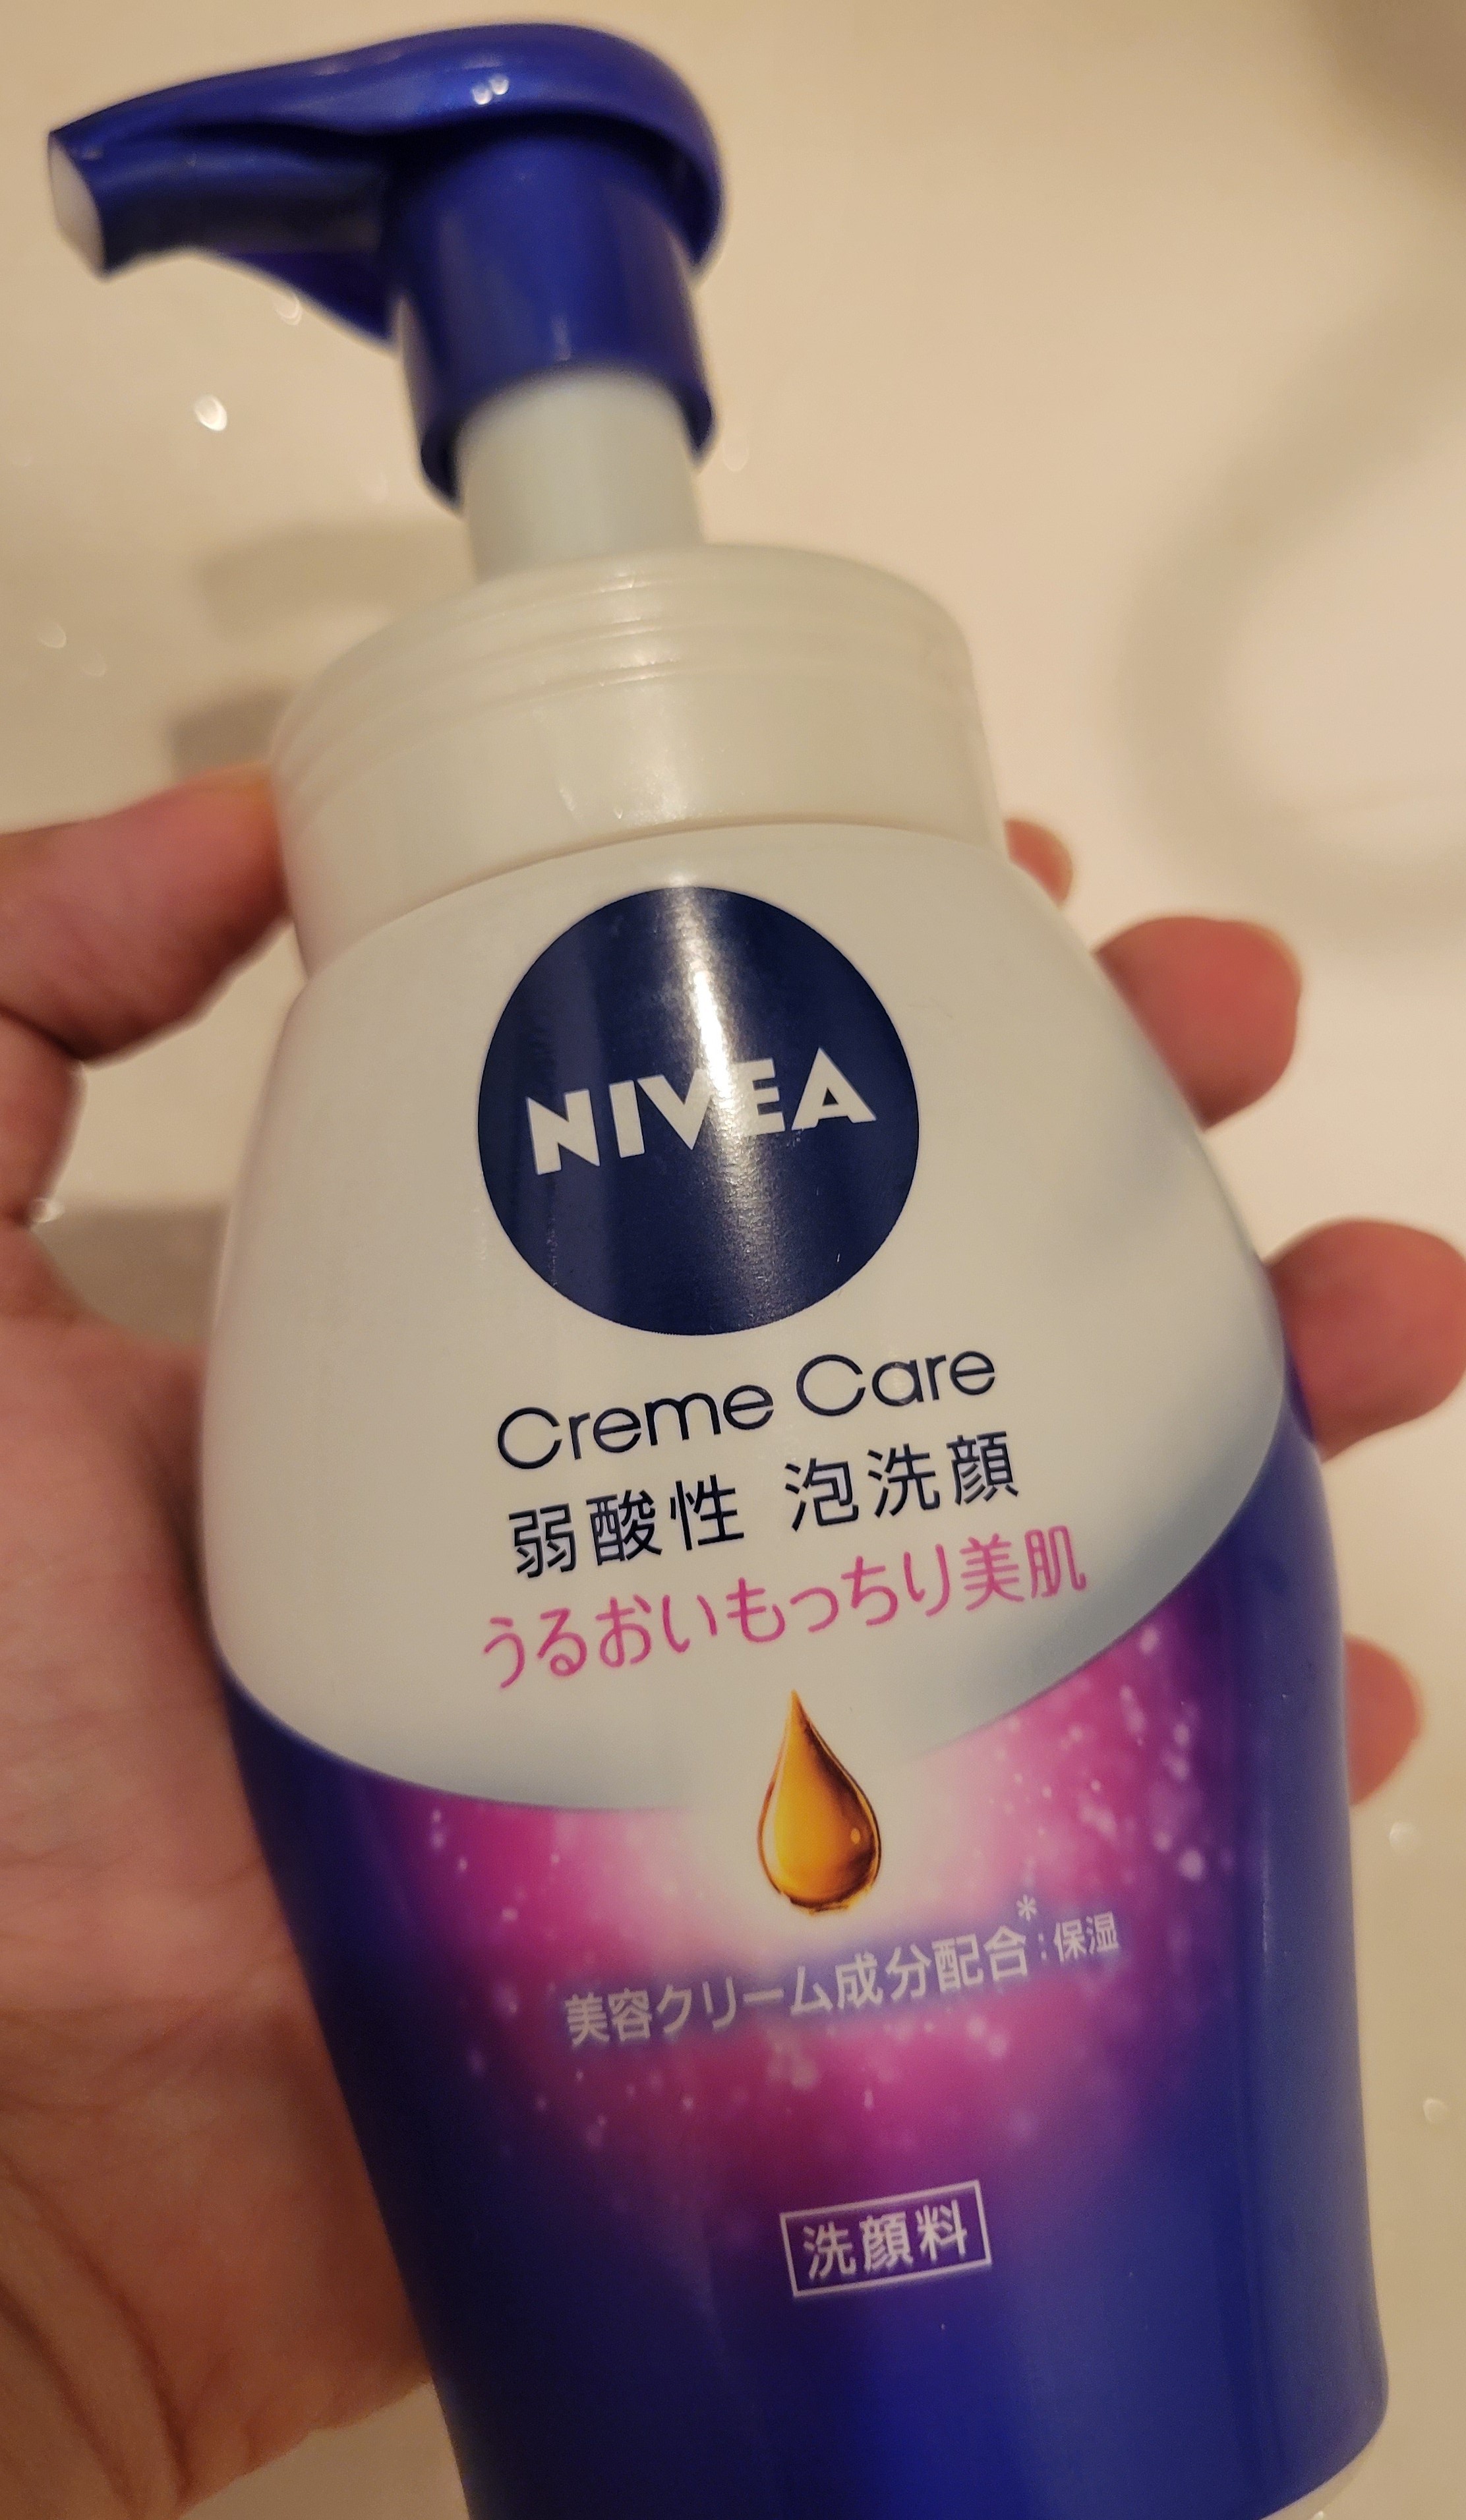 ニベア クリアビューティー 弱酸性 泡洗顔 もっちり美肌 つめかえ用(130ml)